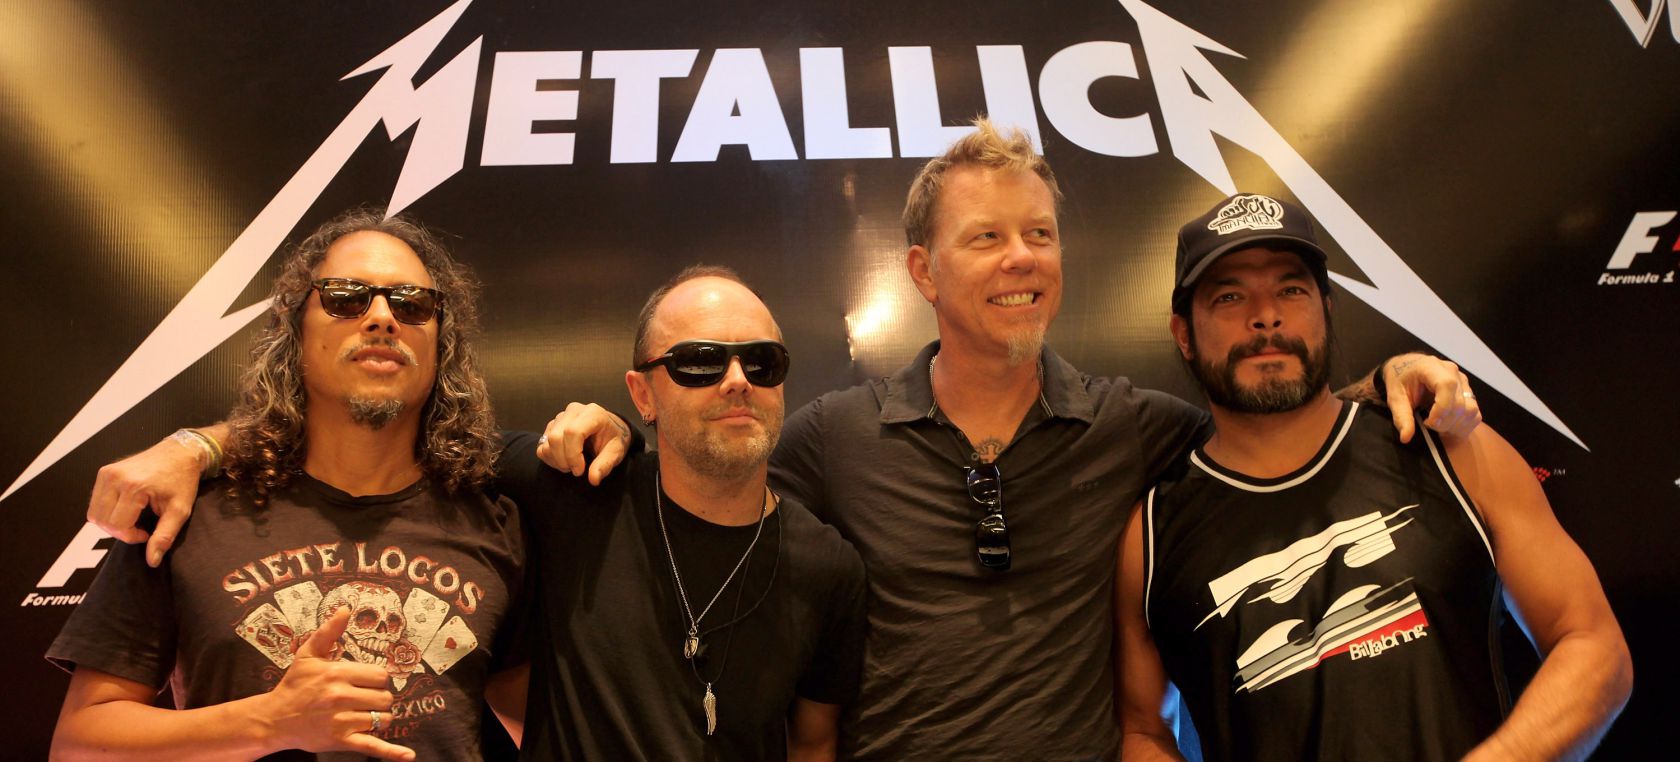 Metallica celebra los 30 años del ‘Black Album’ con versiones de Miley Cyrus, Juanes, J Balvin o Elton John